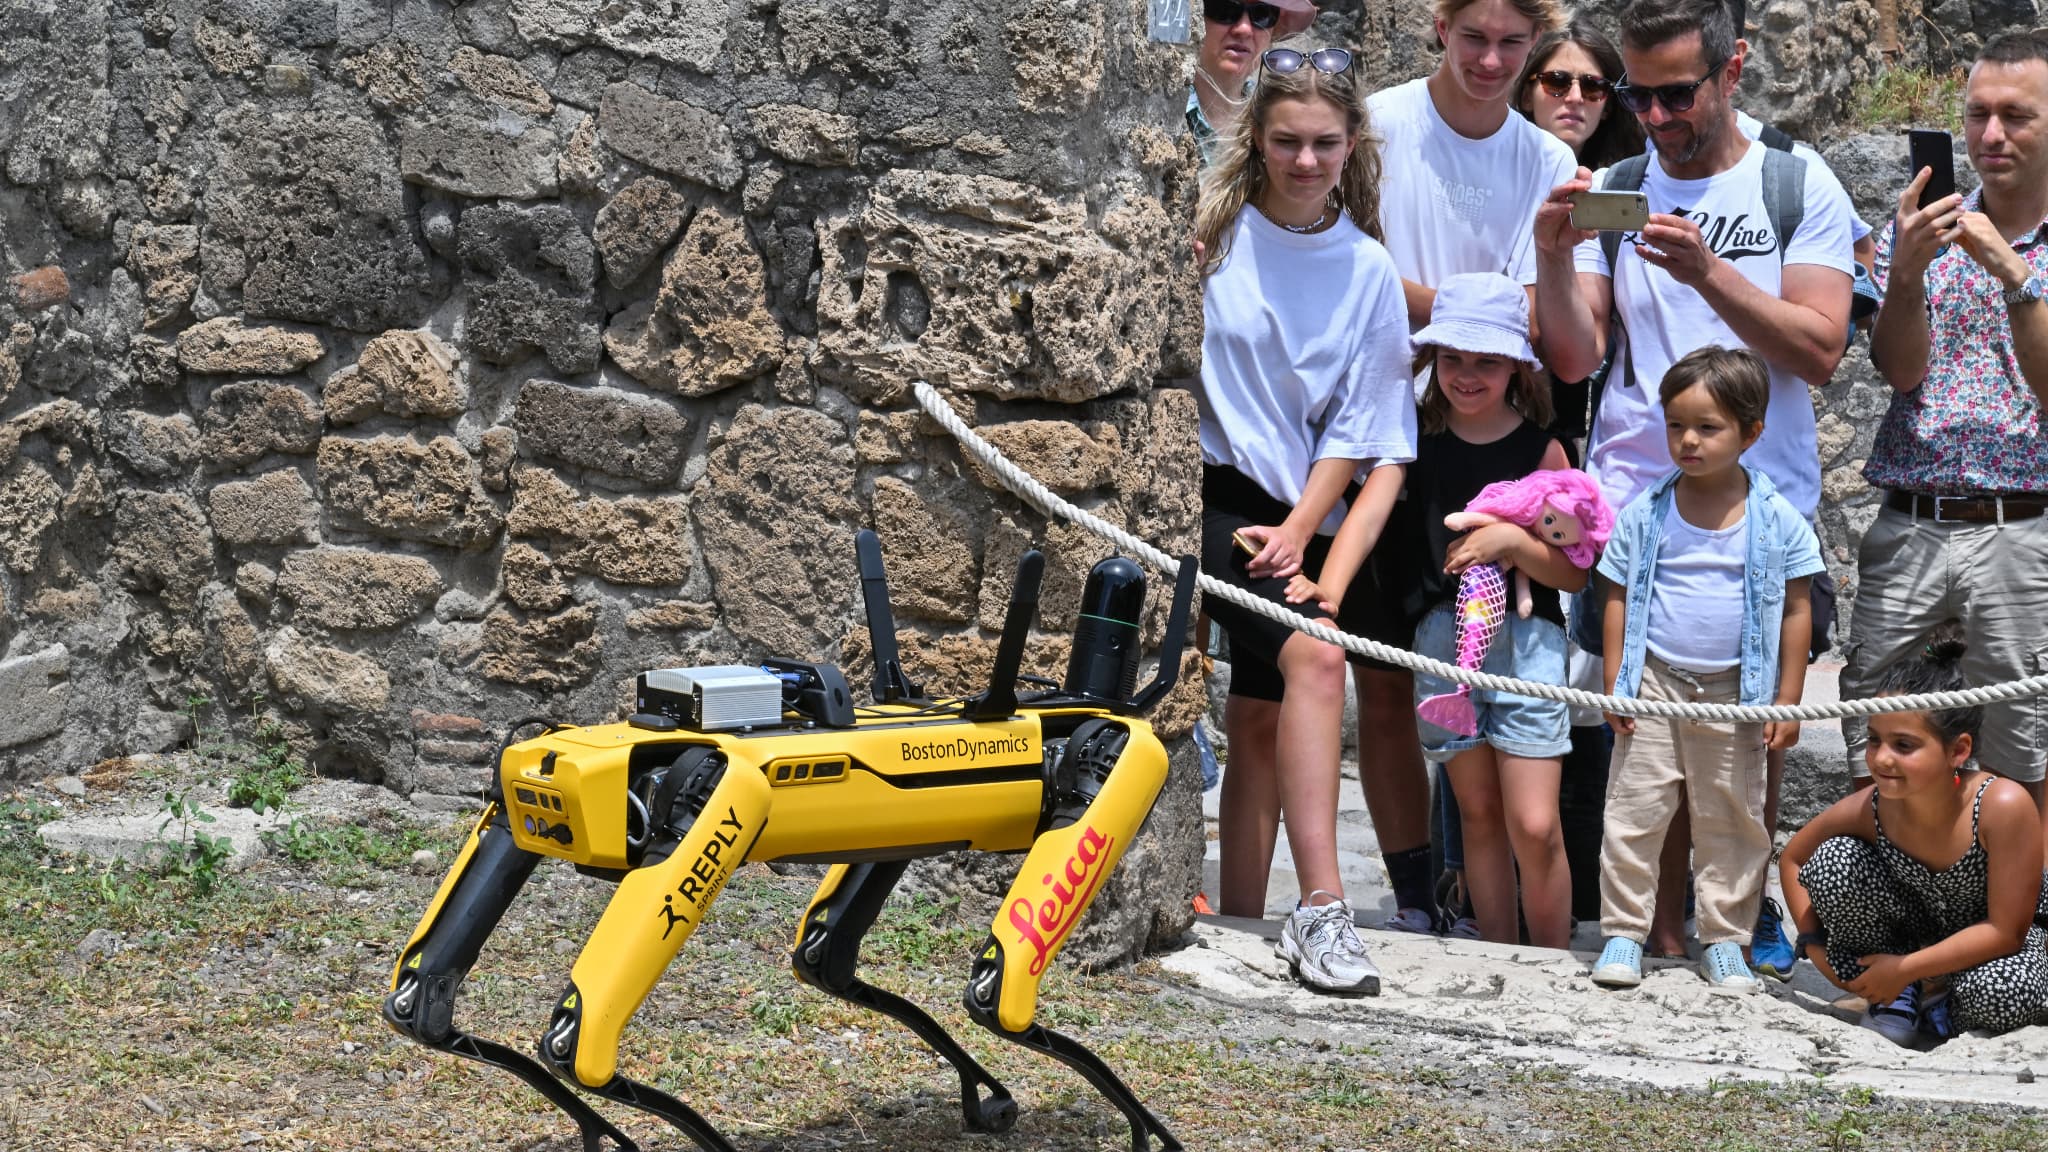 Comment Spot, le robot chien, devient le meilleur outil de l'Homme - Le  Parisien